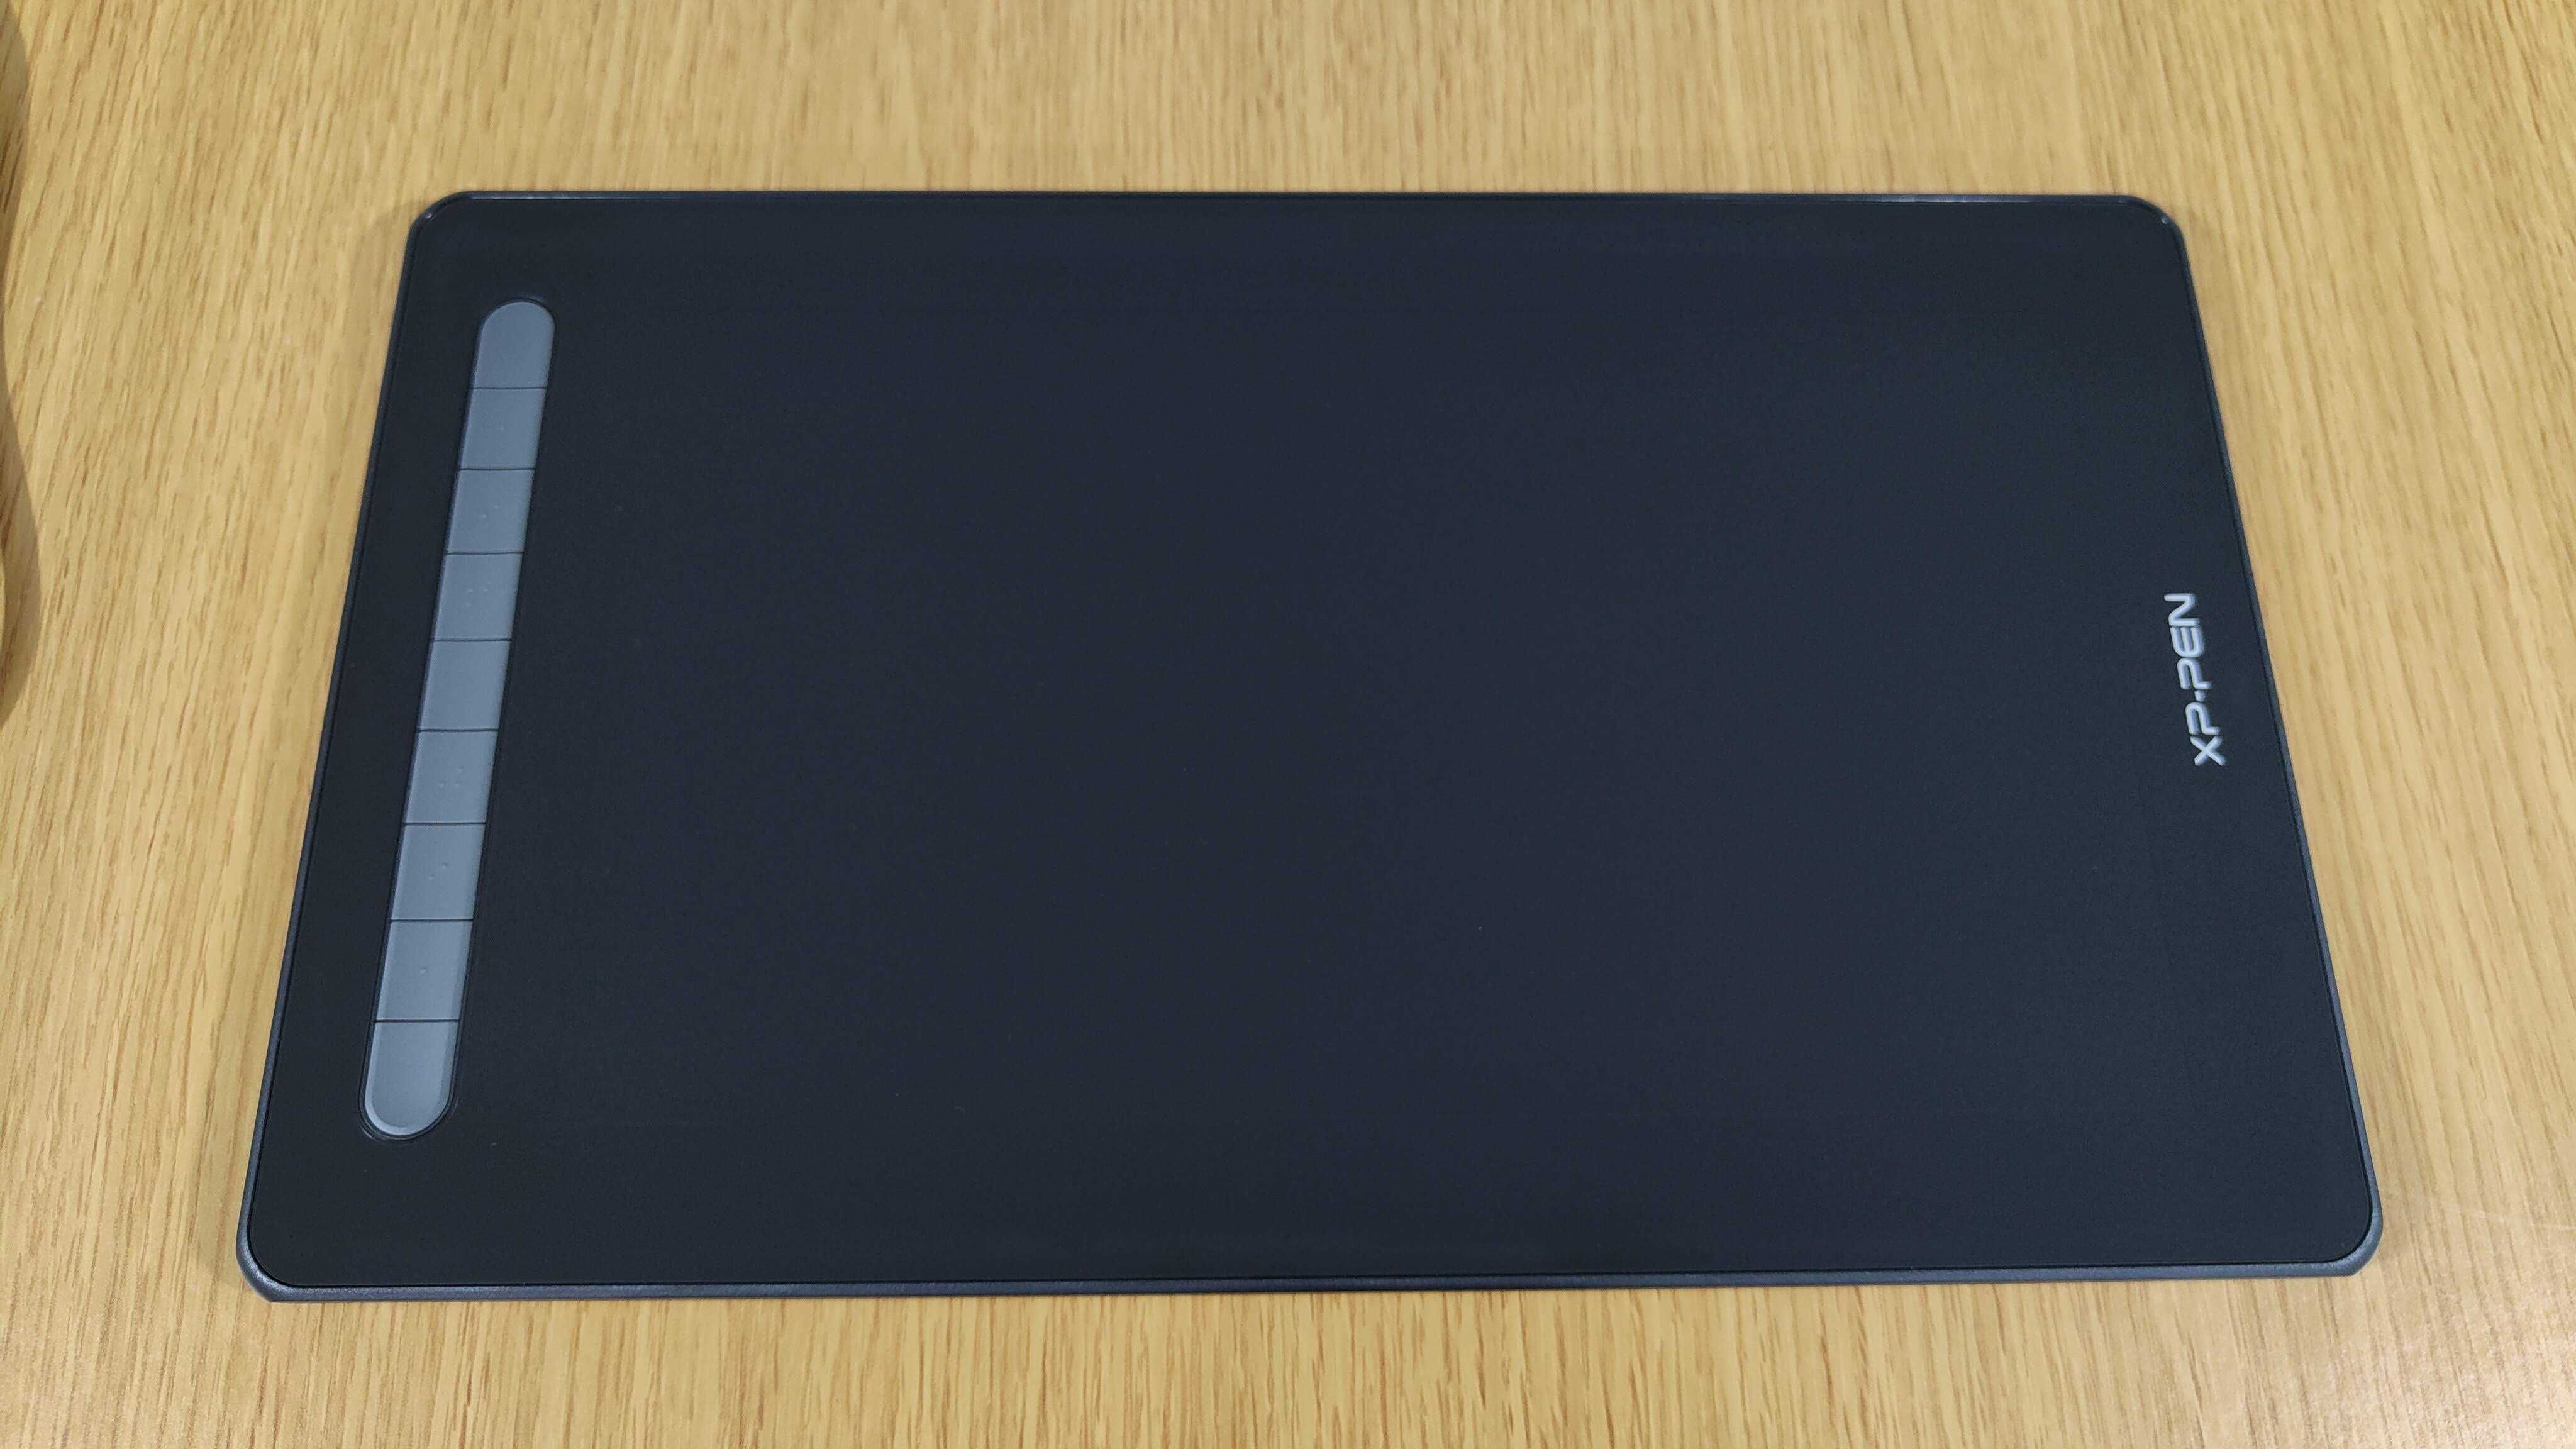 XP-Pen Artist 13 (2nd Gen) - Mesa digitalizadora com ecrã FullHD